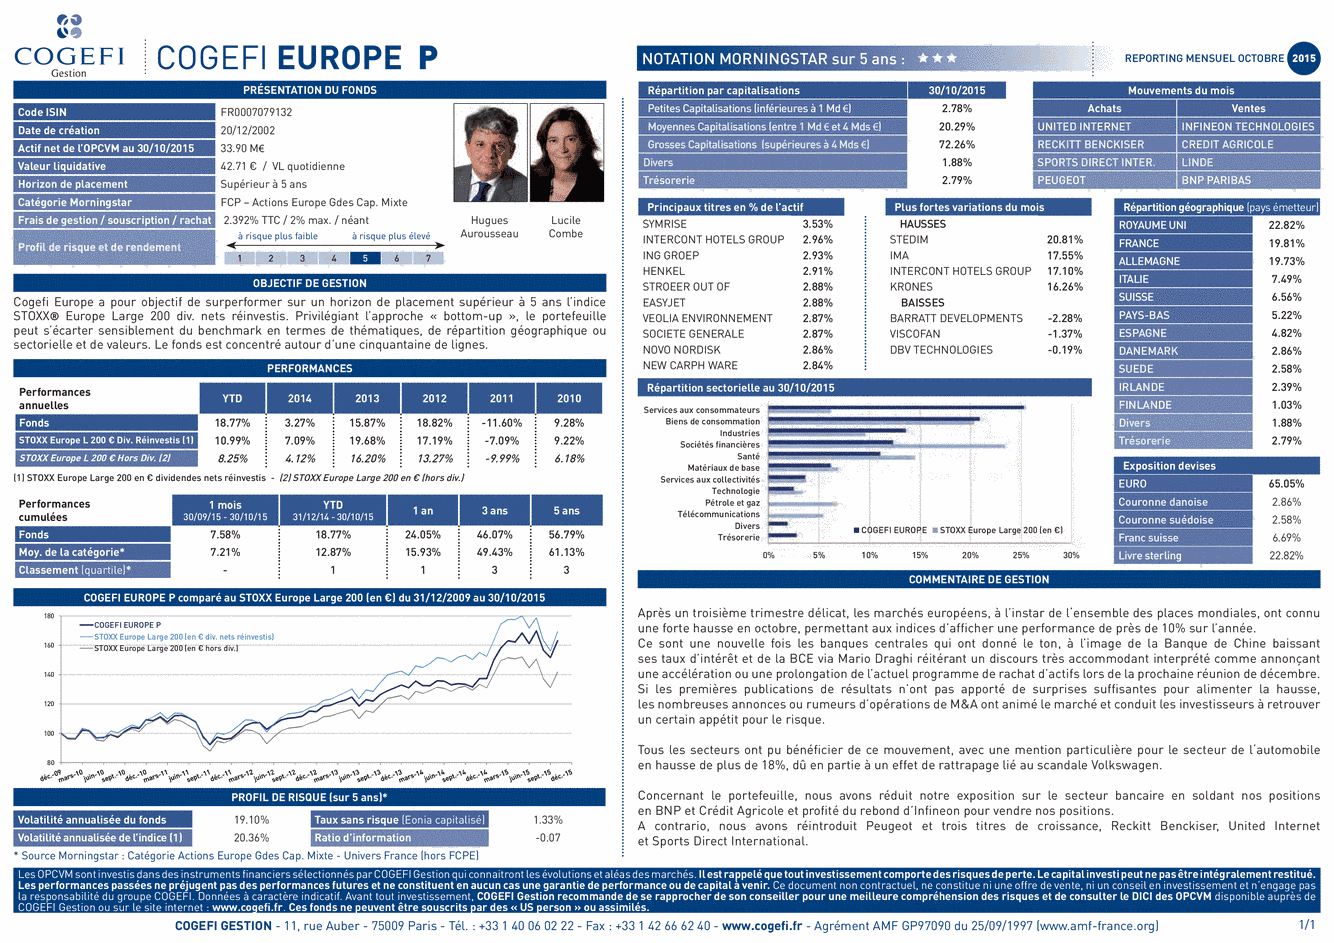 Fiche Produit Cogefi Europe P - 31/10/2015 - Français